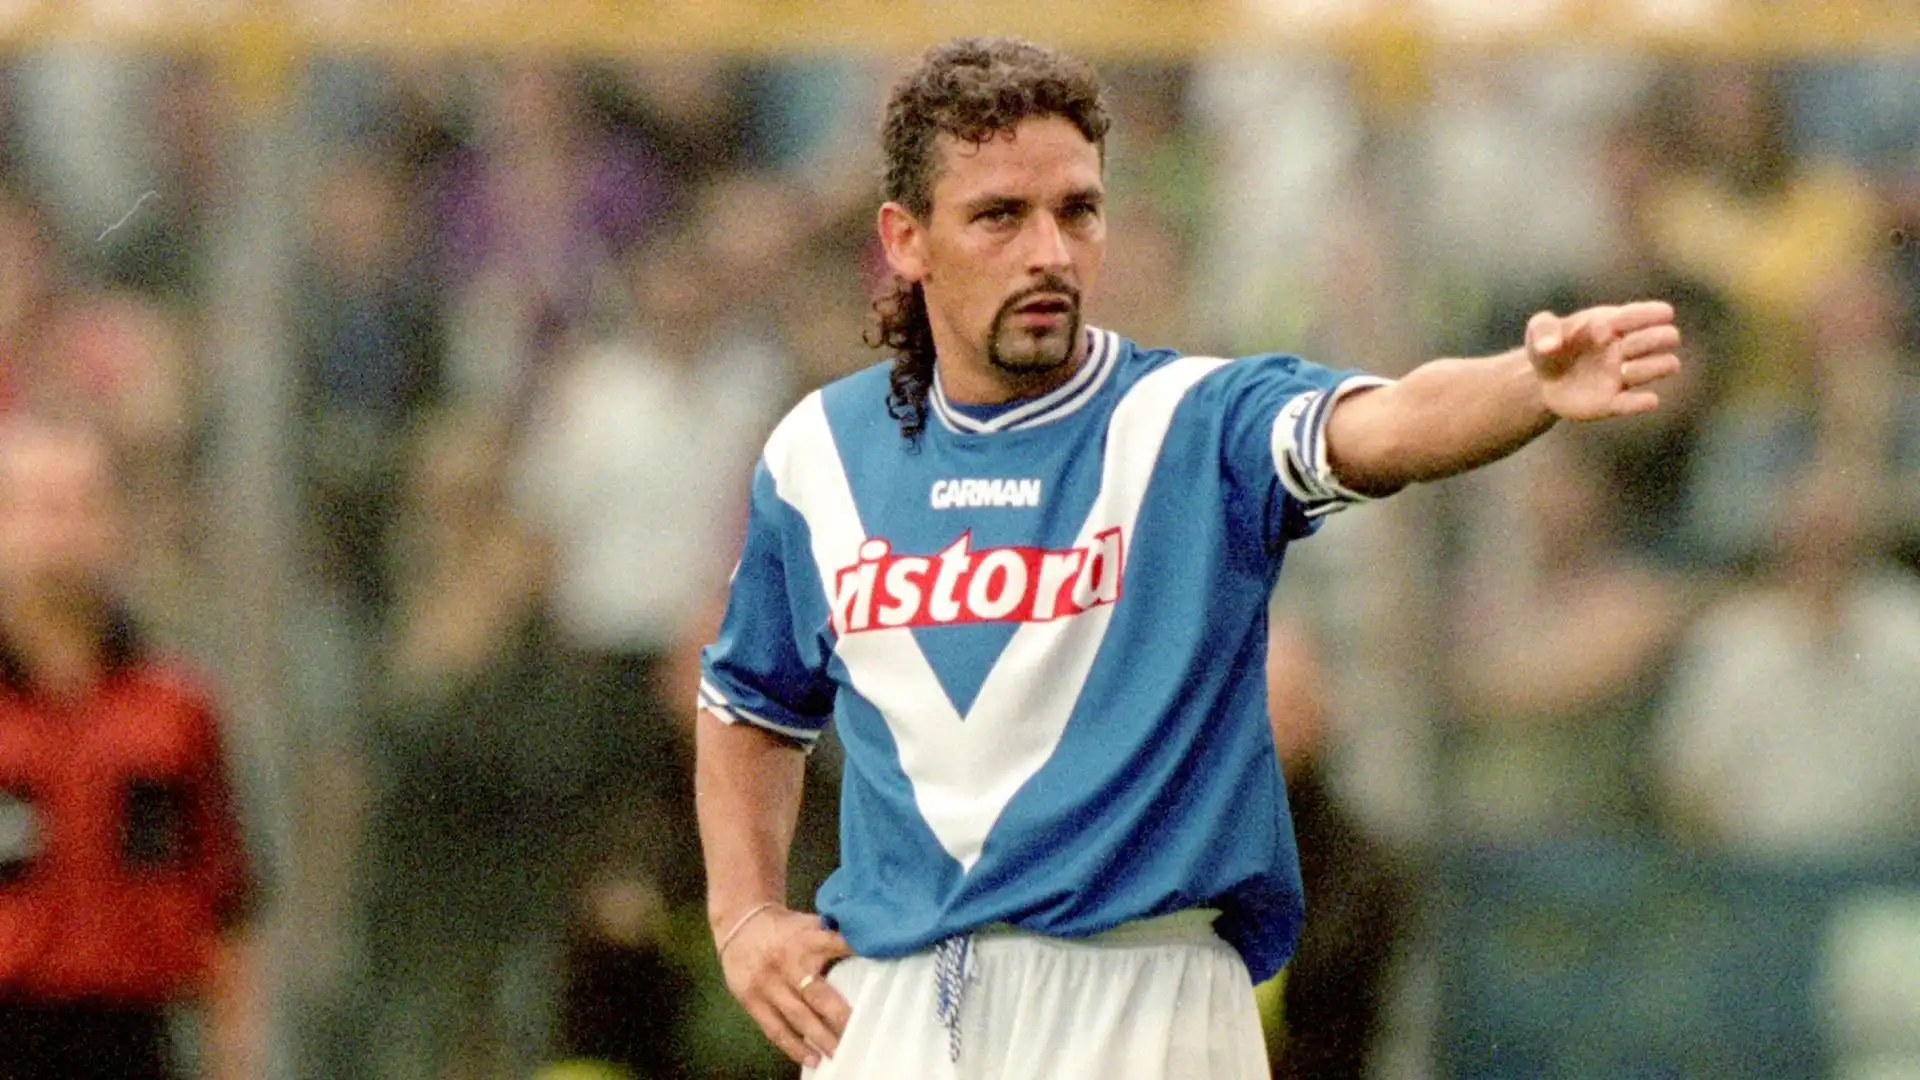 Roberto Baggio (Brescia): Il Divin Codino dopo Vicenza e Fiorentina ha vestito le maglie di Juve, Milan, Bologna e Inter, poi la sorpresa. Il 14 settembre 2000 sbarca nel neopromosso Brescia di Carlo Mazzone, a cui regalerà emozioni e puro spettacolo